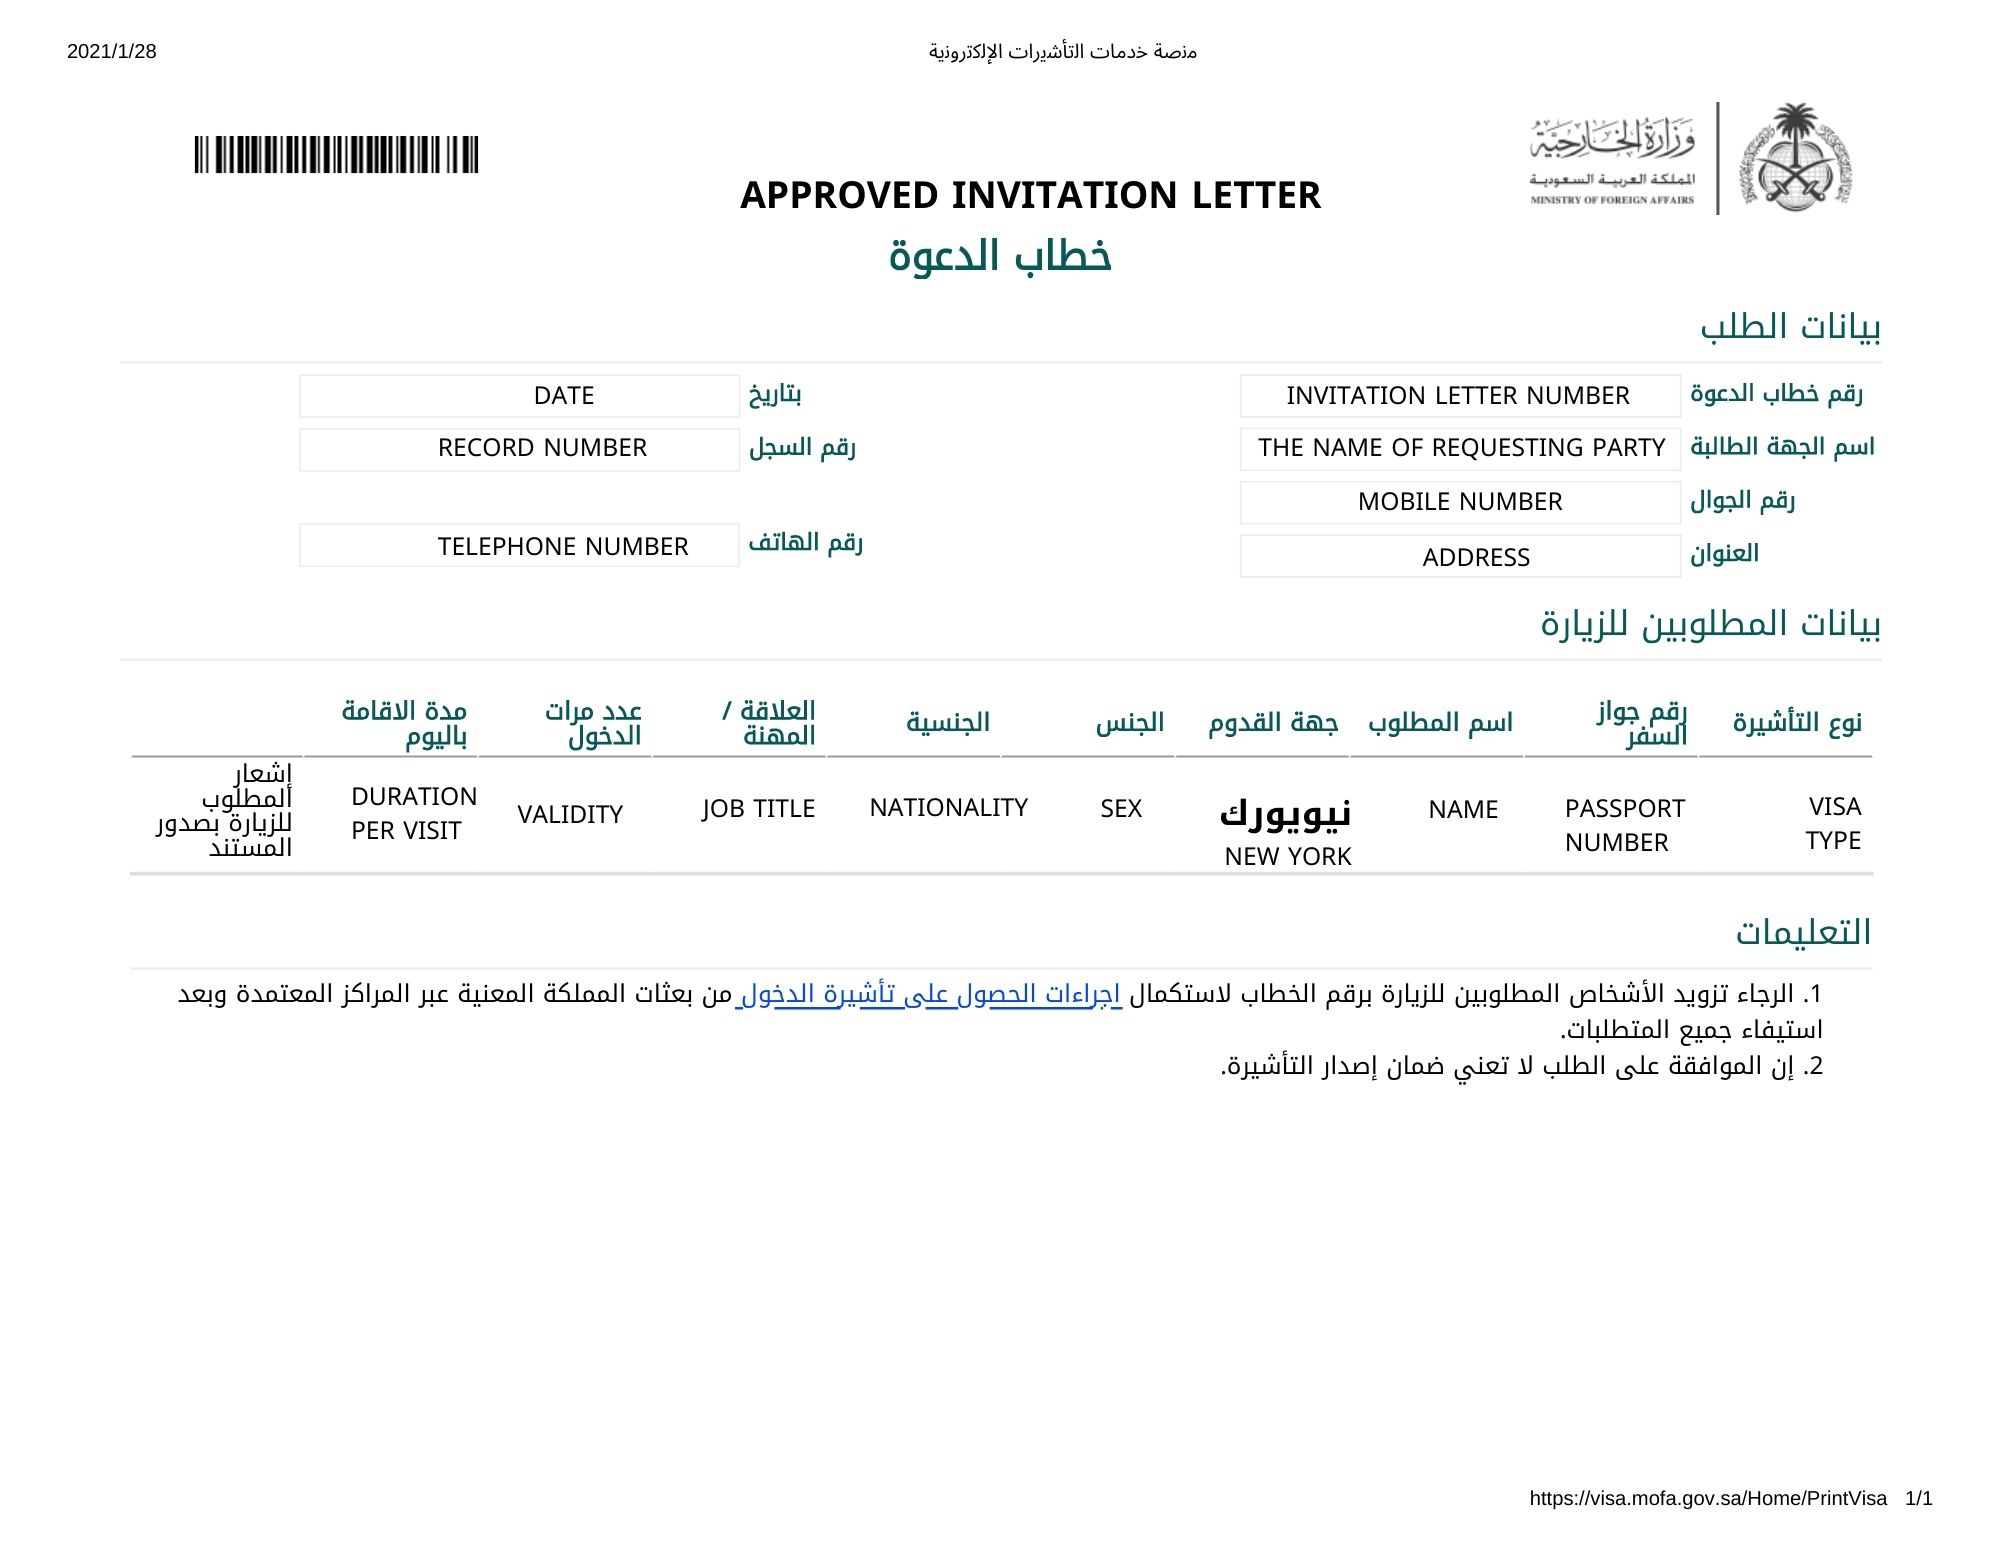 saudi arabia visa requirements visit saudi official website